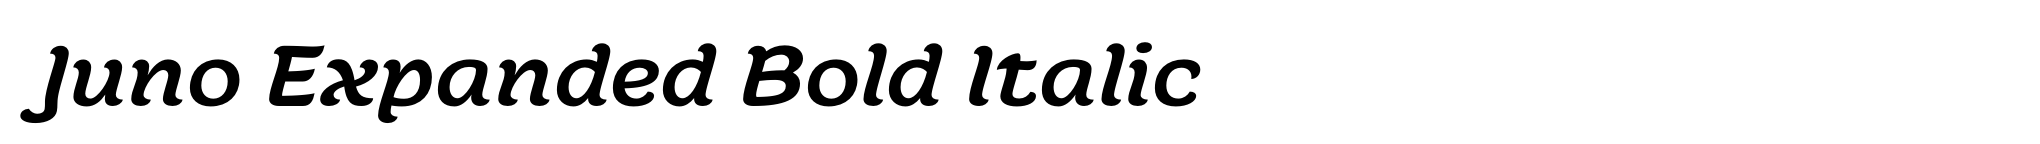 Juno Expanded Bold Italic image